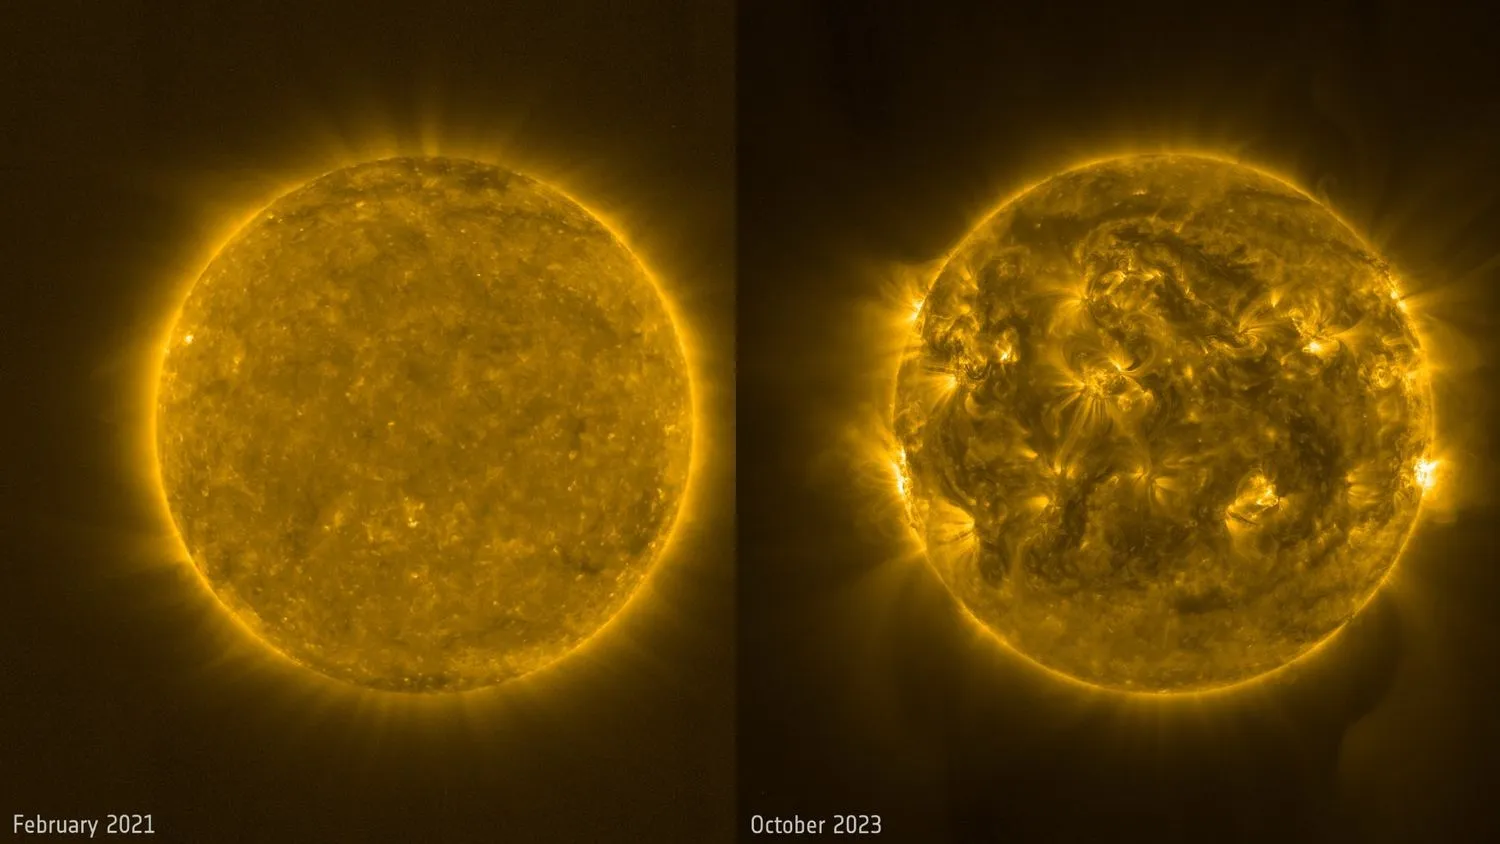 zwei Ansichten der Sonne; links eine relativ ruhige Oberfläche, rechts erscheint die Sonne viel chaotischer